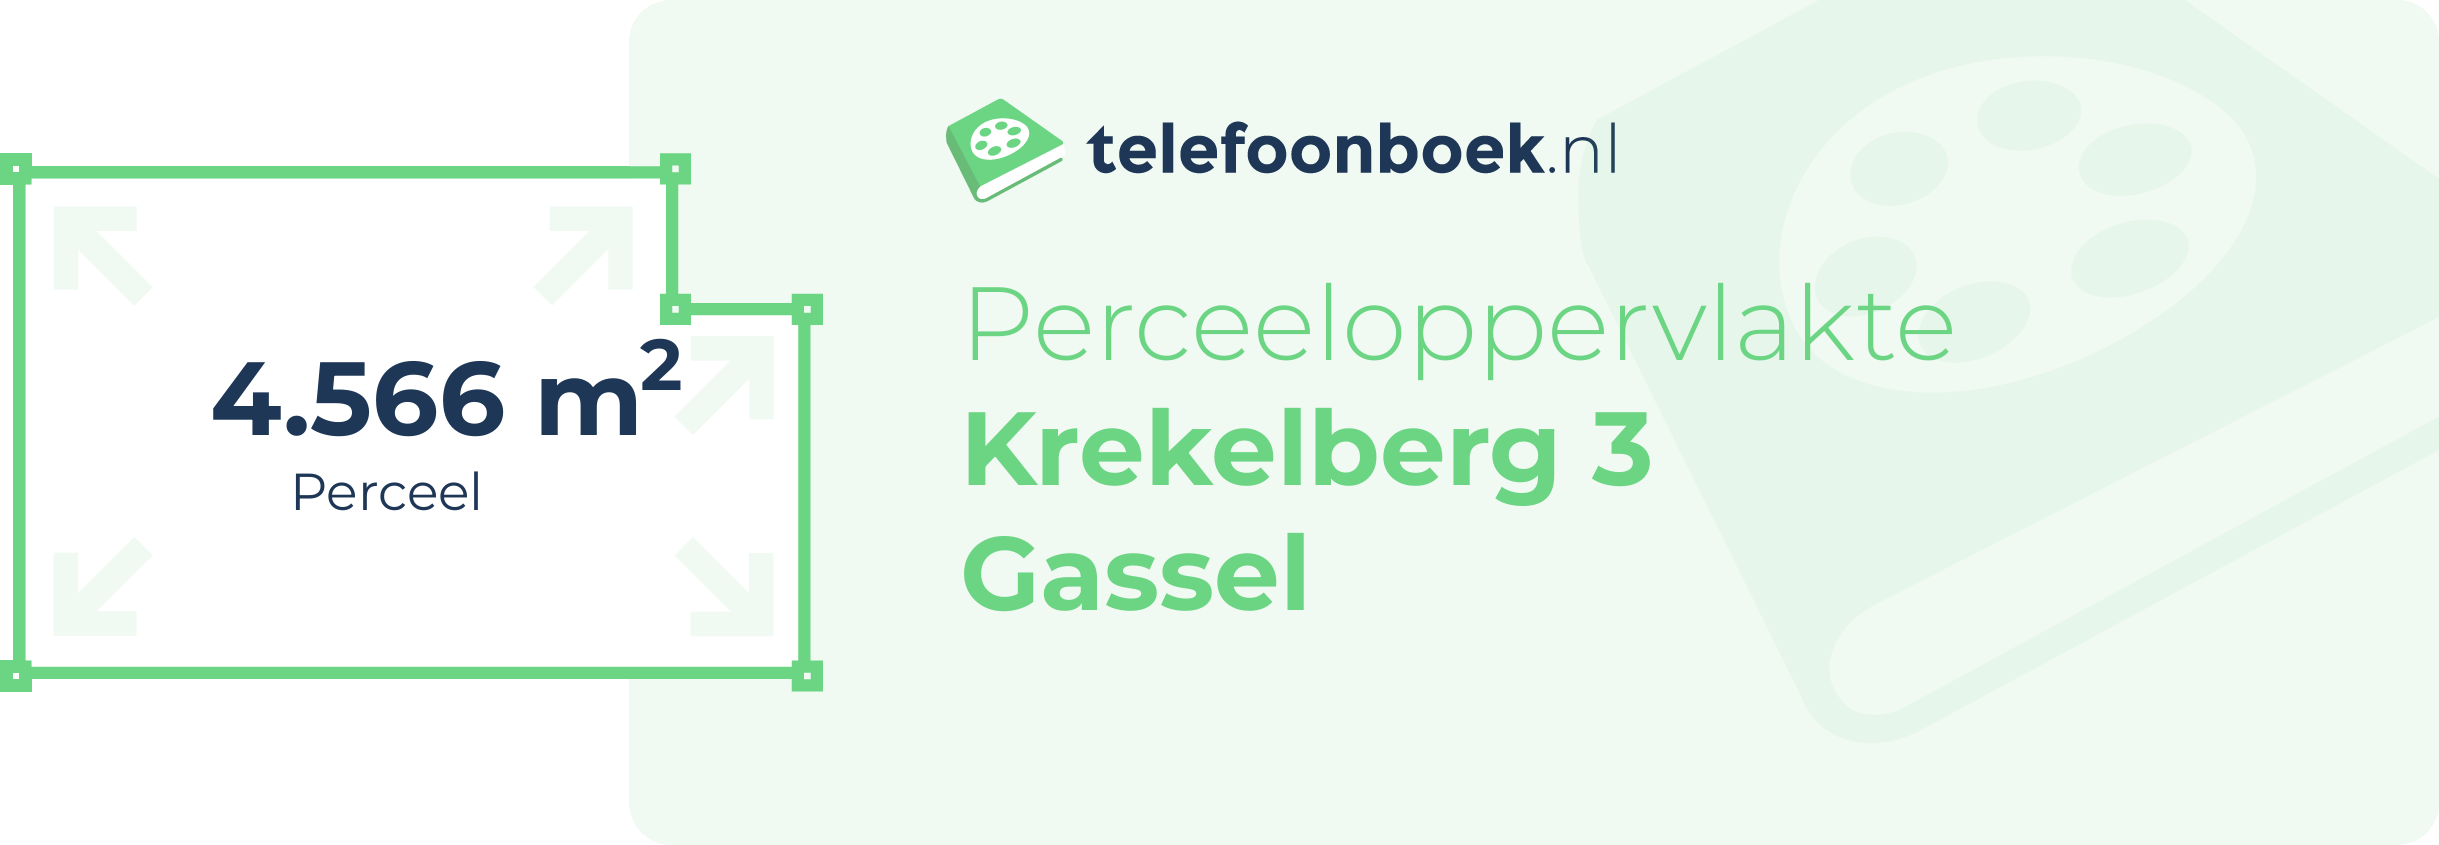 Perceeloppervlakte Krekelberg 3 Gassel